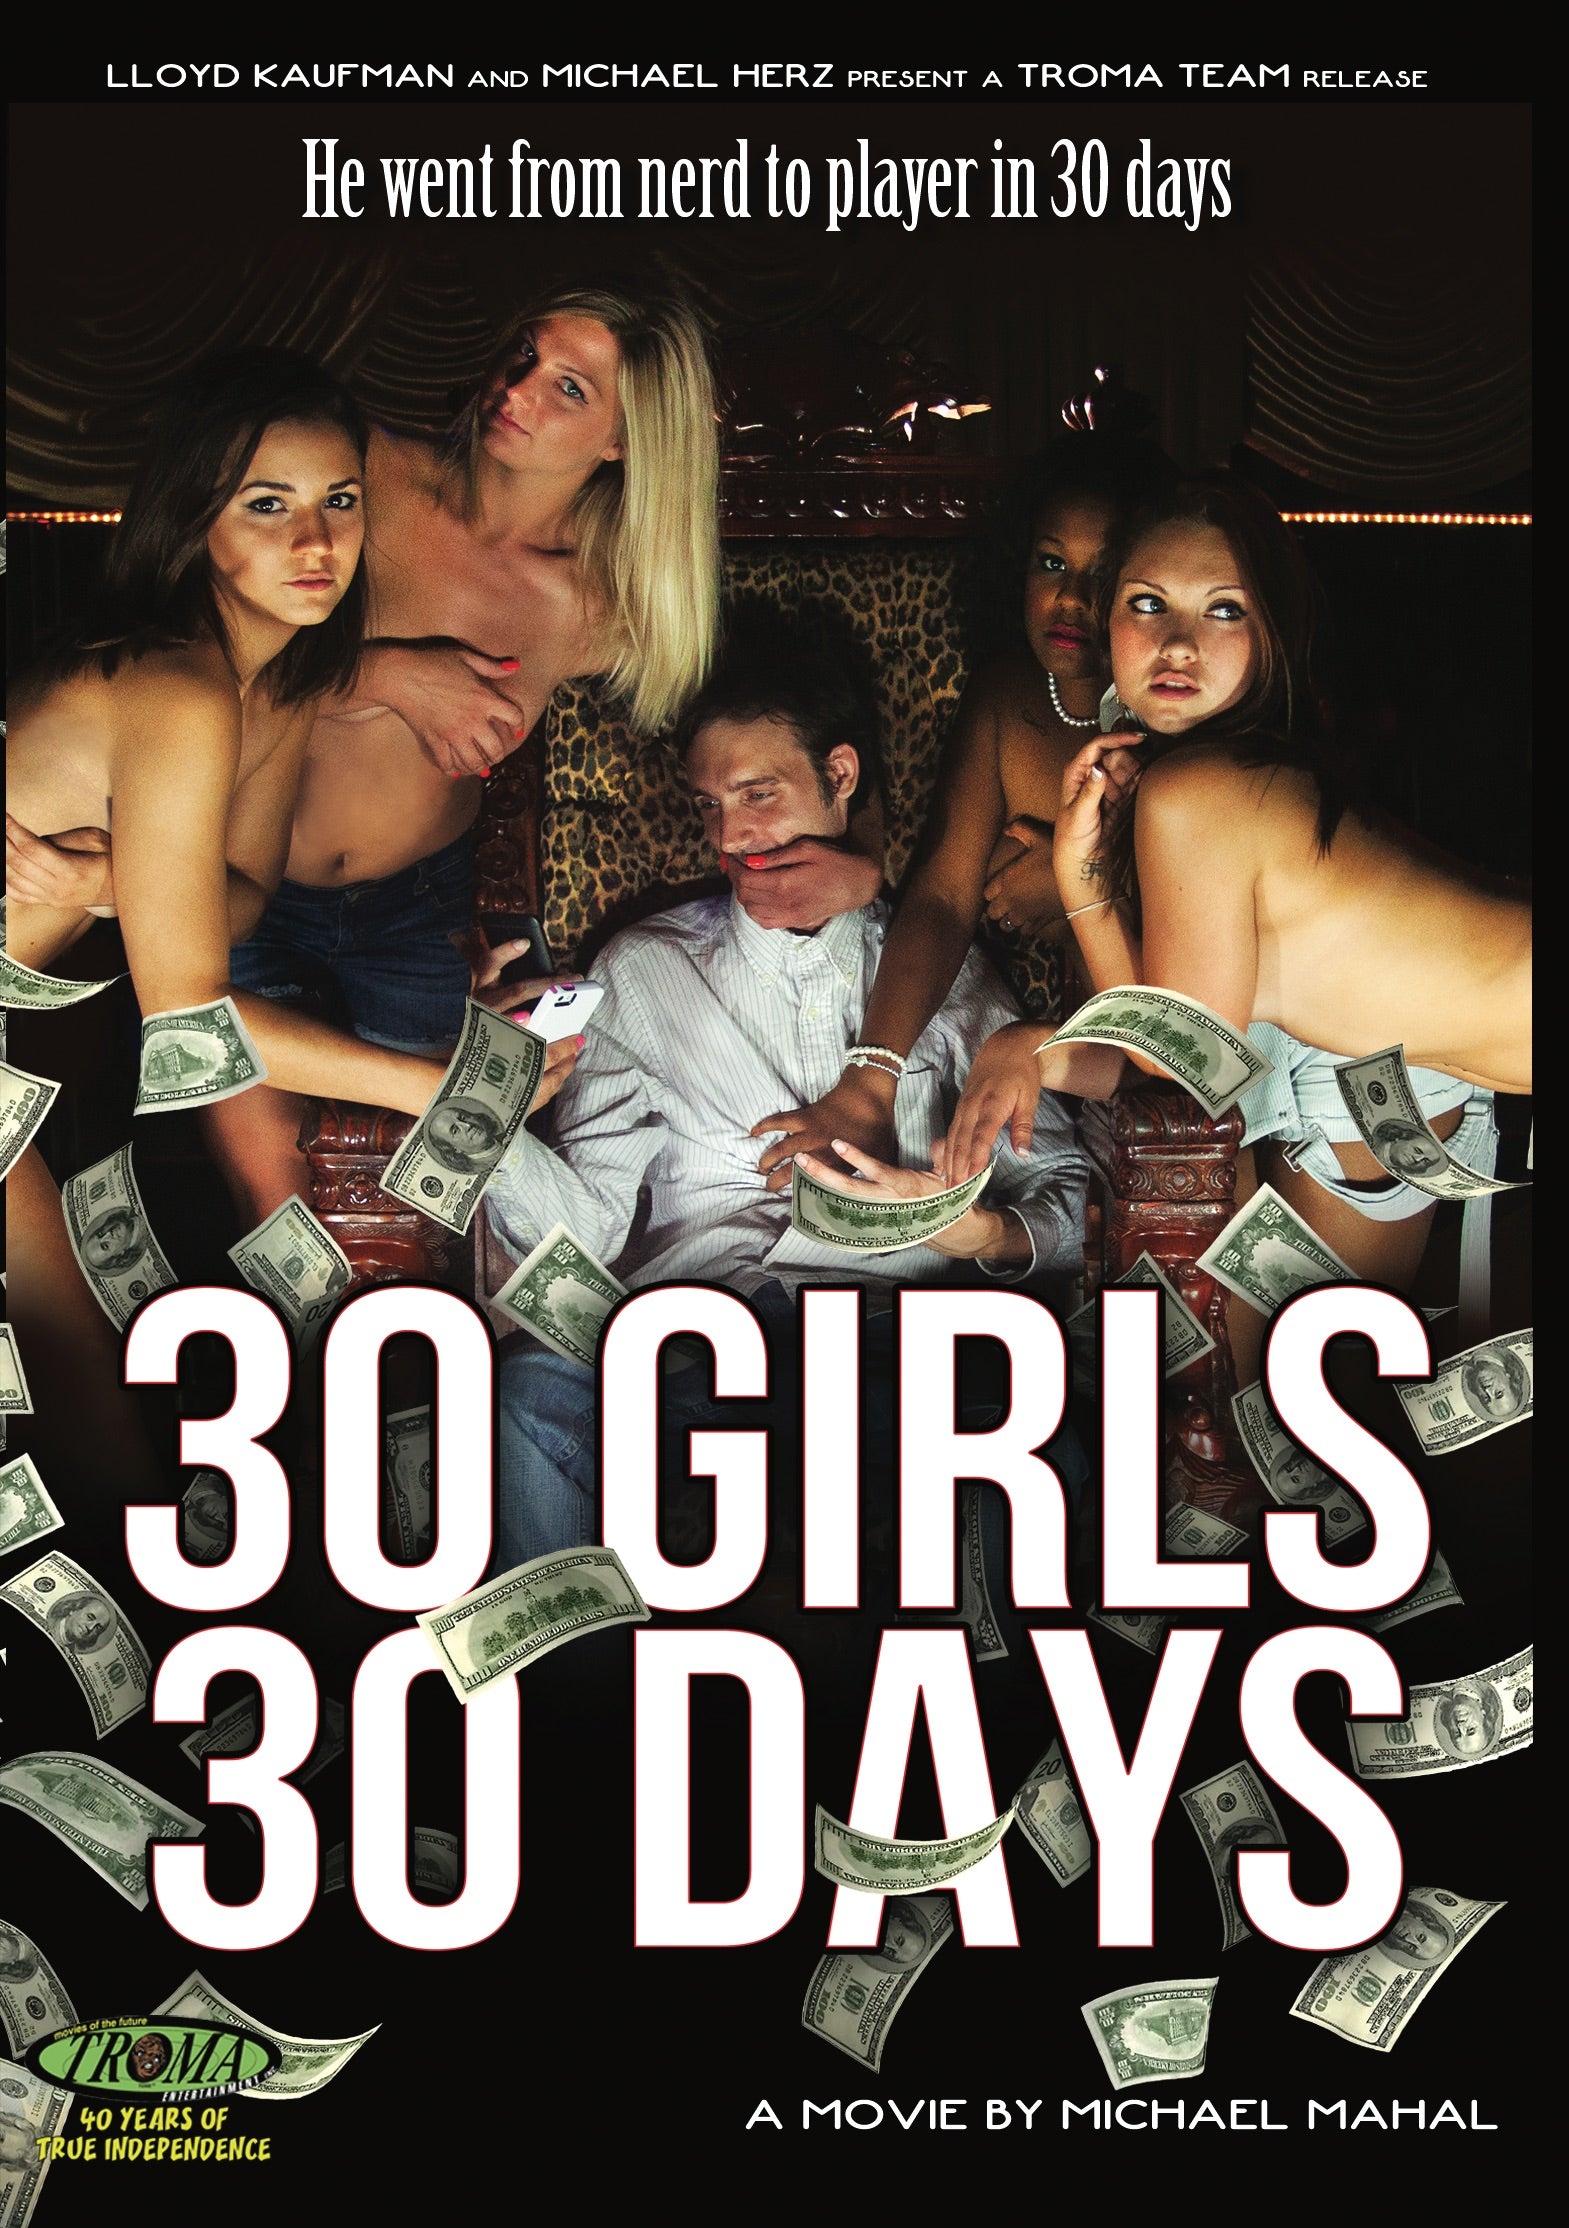 30 GIRLS 30 DAYS DVD